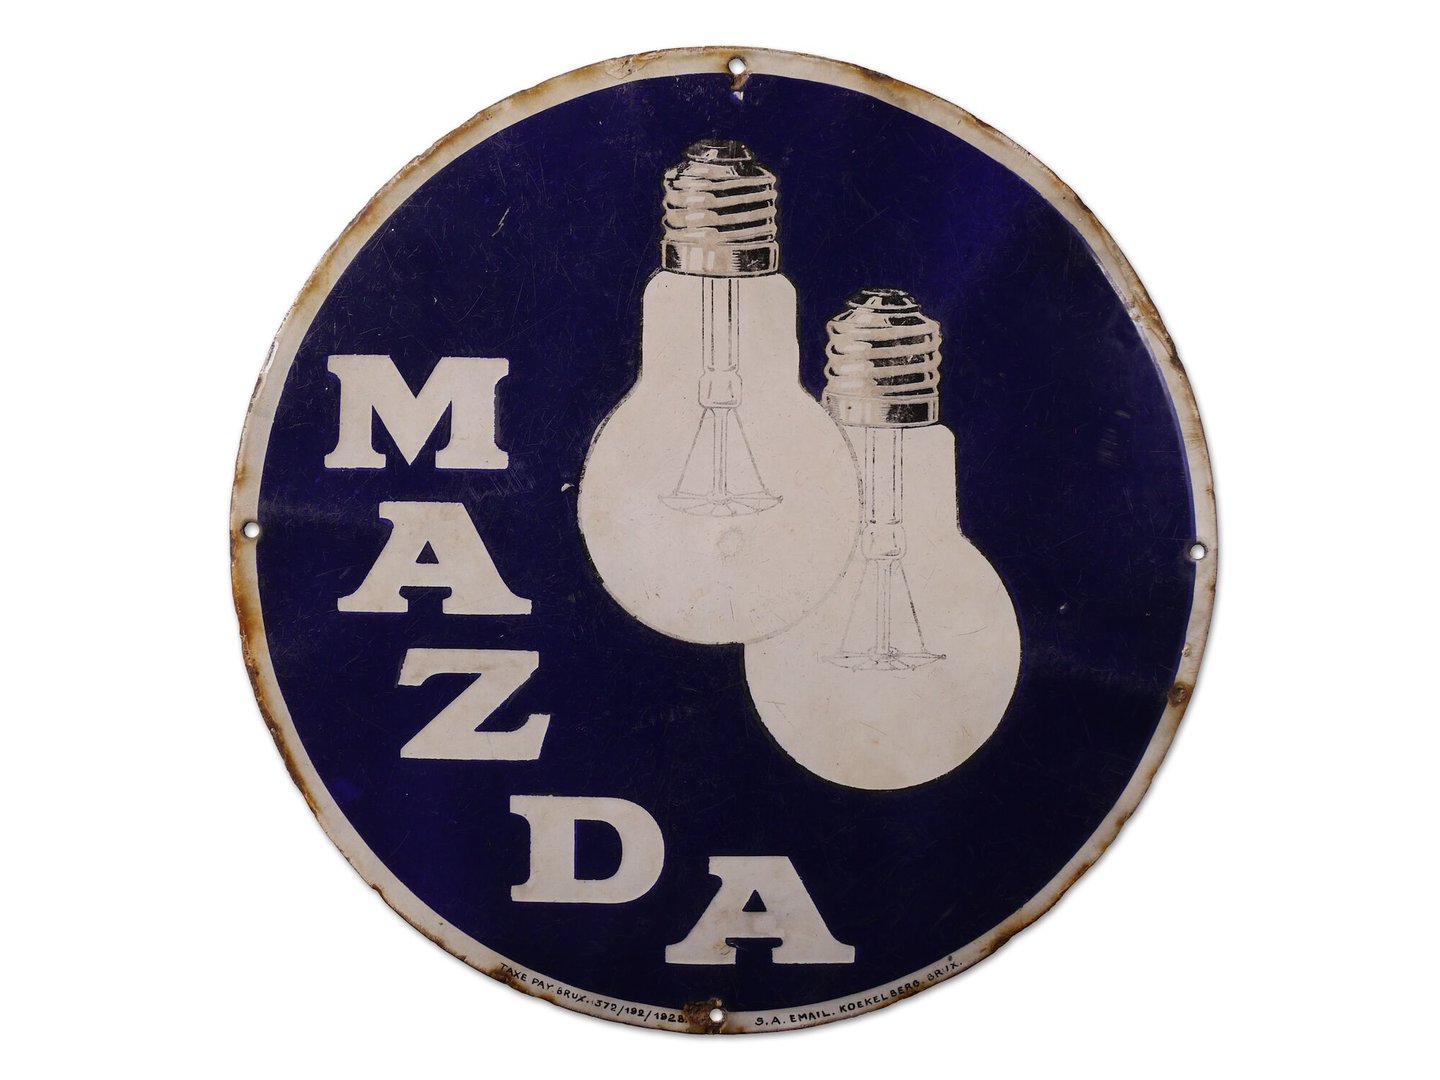 Geëmailleerd reclamebord voor lampen van het merk Mazda